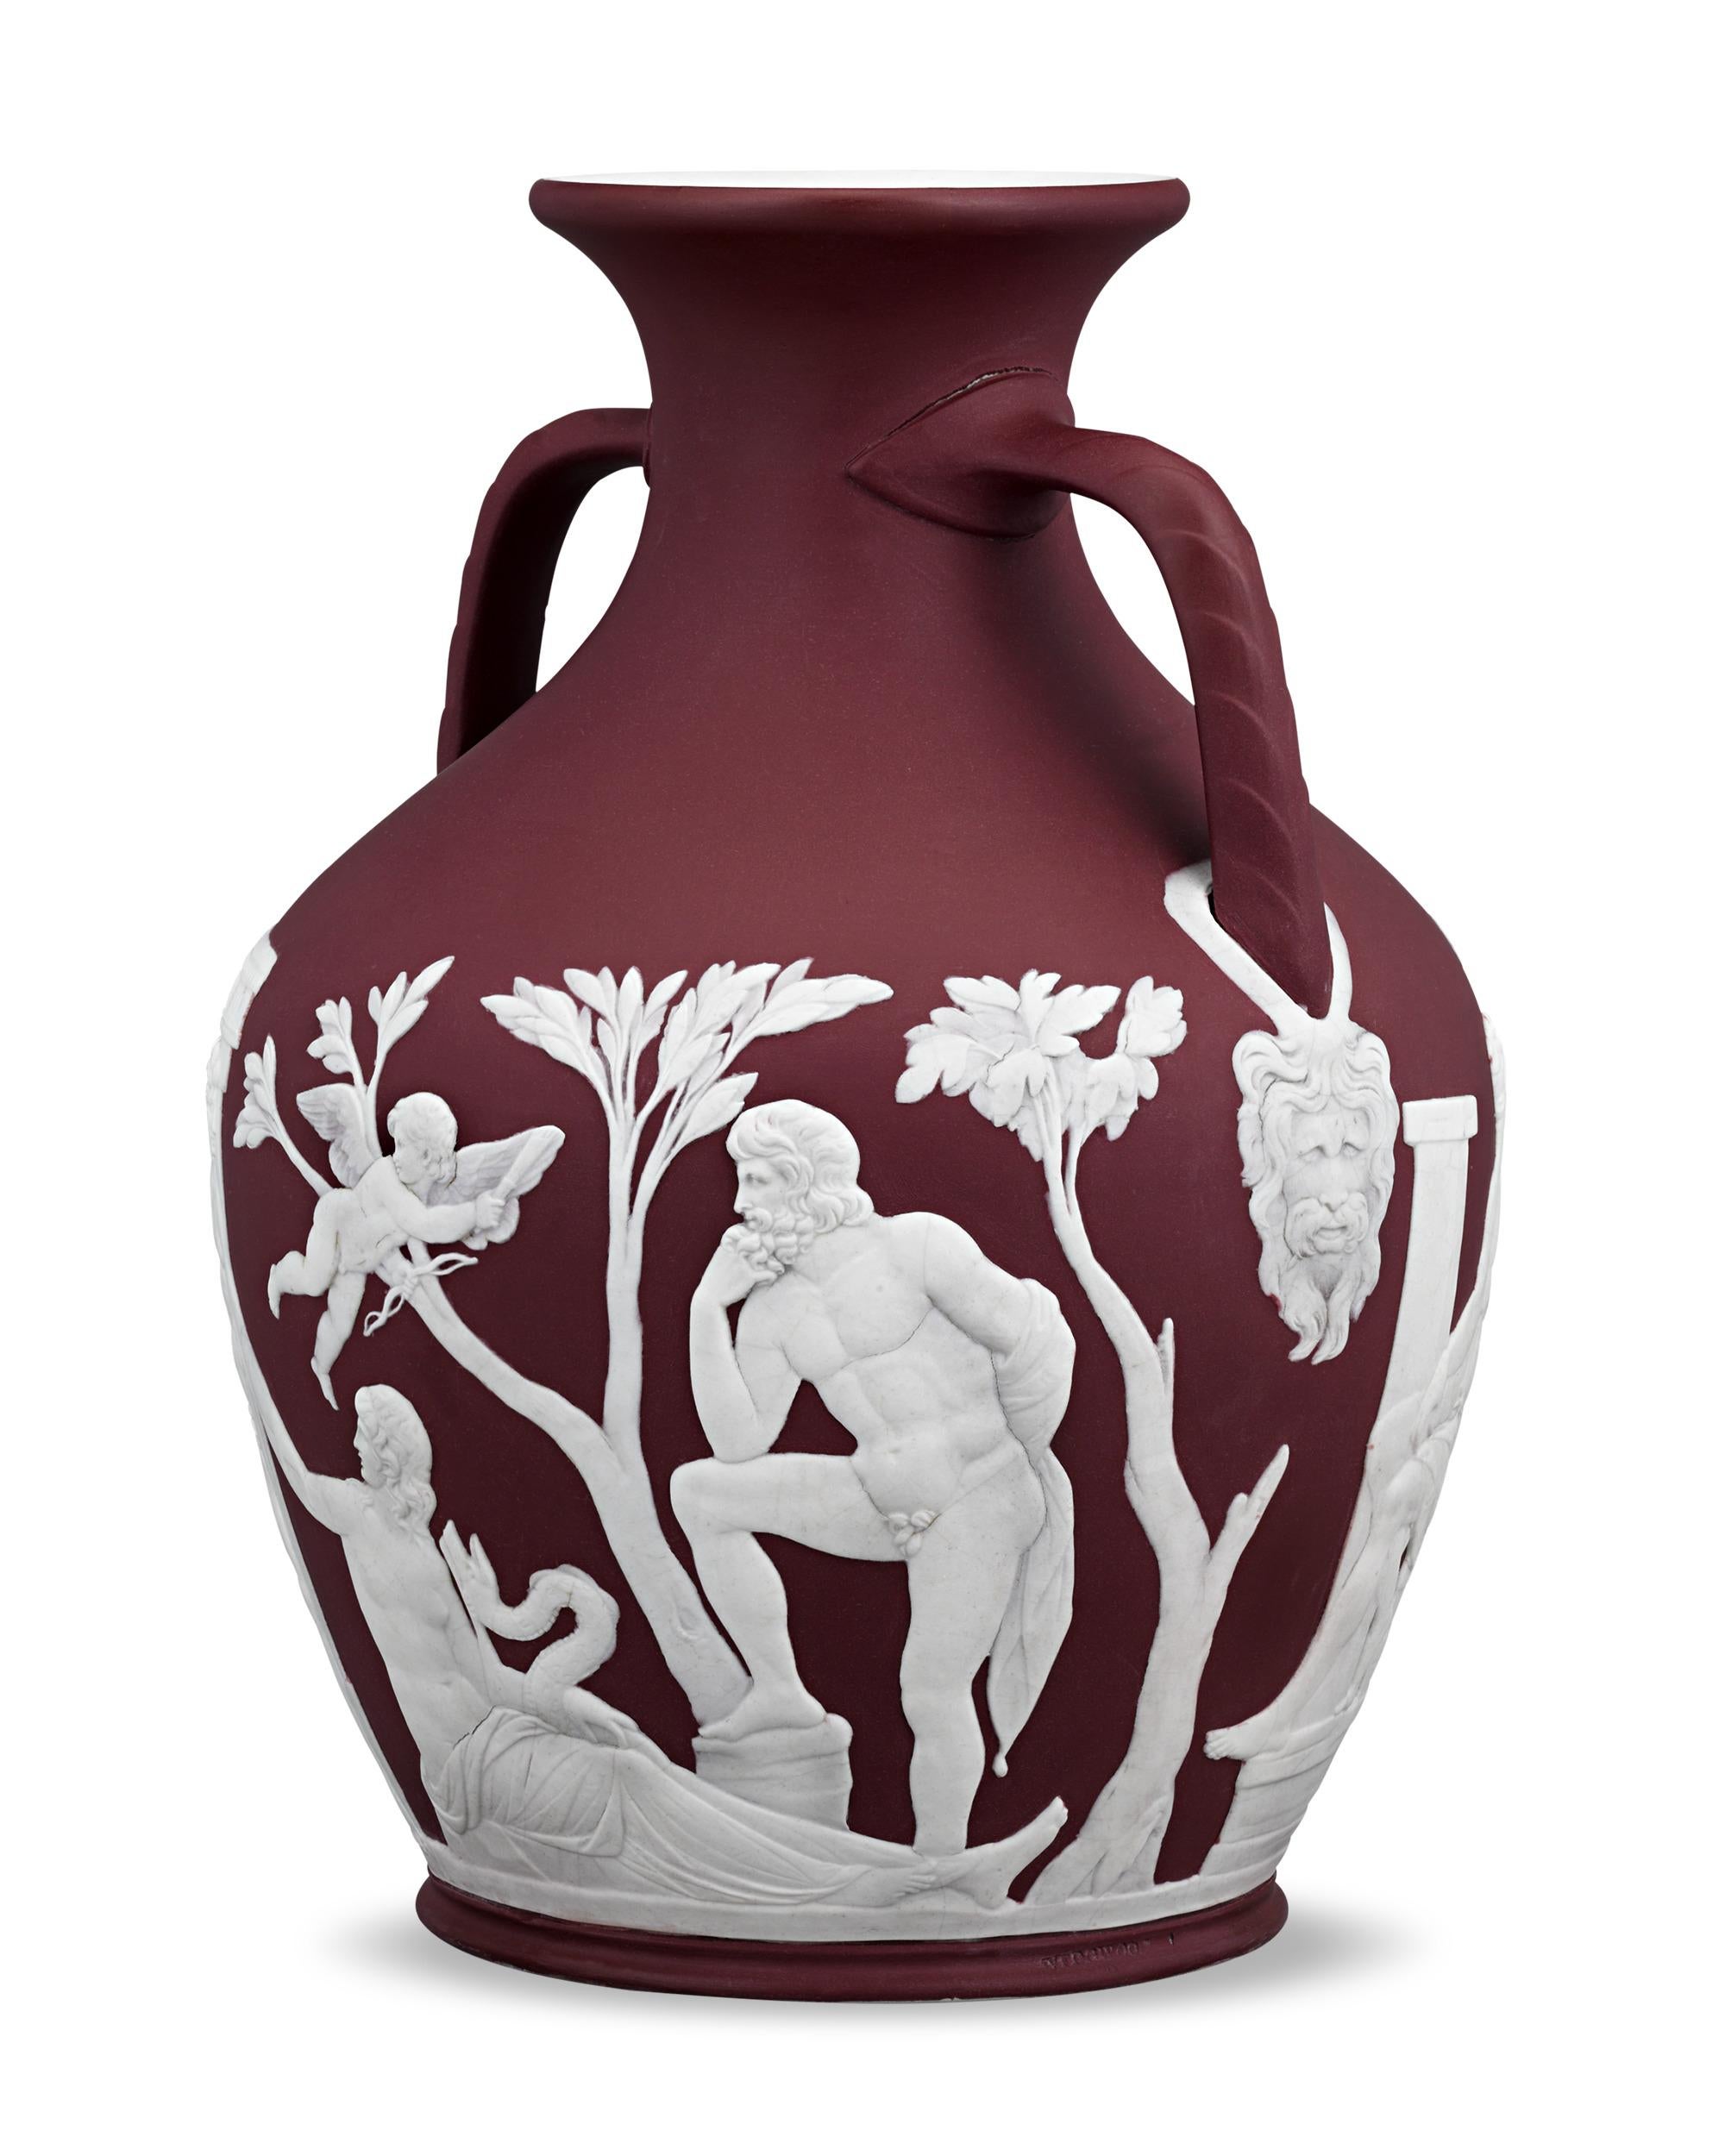 Diese bemerkenswert seltene Portland-Vase von Wedgwood besticht durch ihren begehrten karminroten Farbton. Da die leuchtend rote Färbung schwer zu kontrollieren war und leicht ausbluten konnte, wurde karminrotes Jaspis nur für kurze Zeit von der